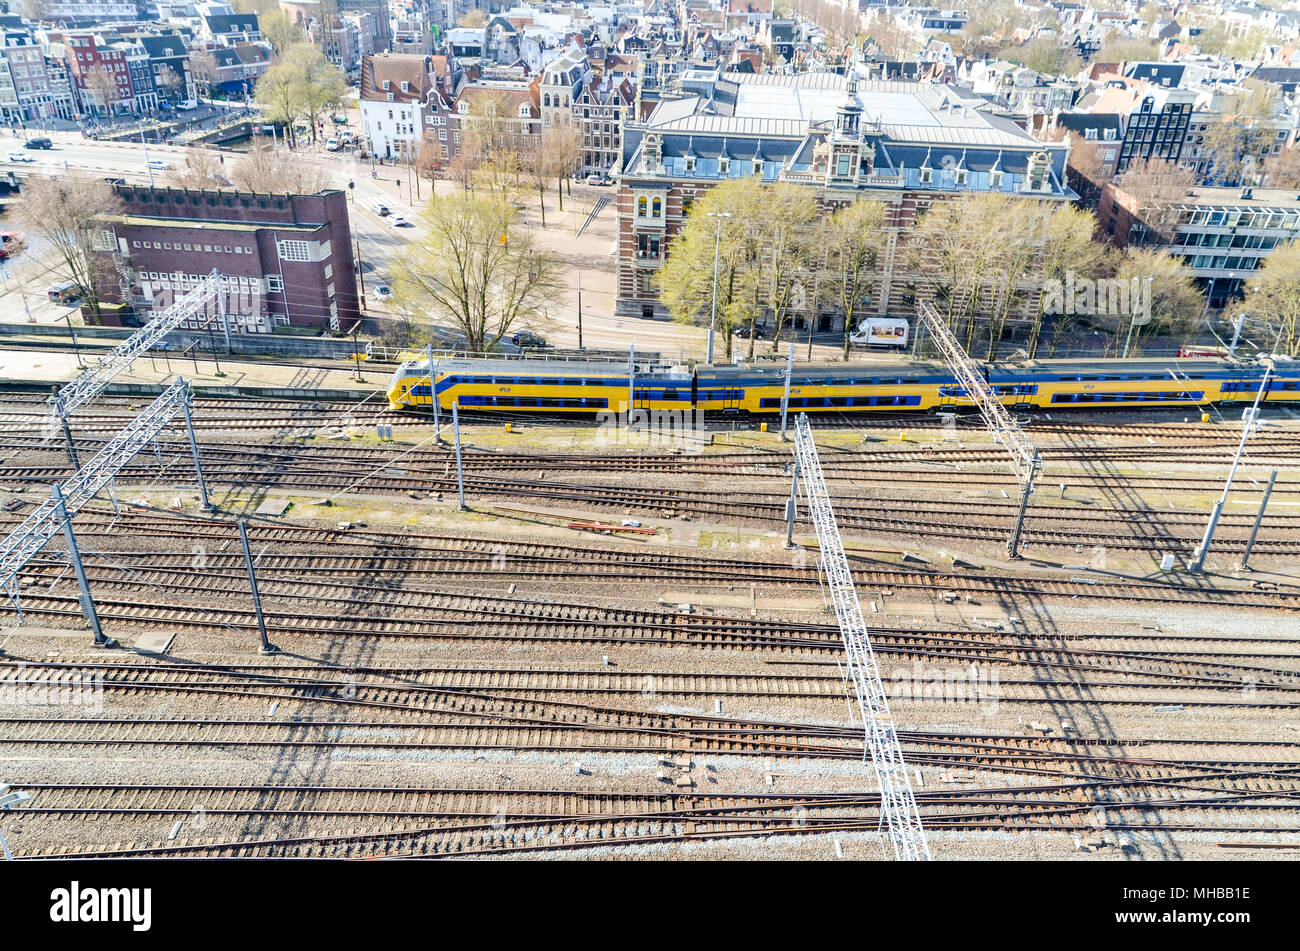 Vista aérea de la ciudad y de la estación Centraal, Amsterdam, Países Bajos Foto de stock